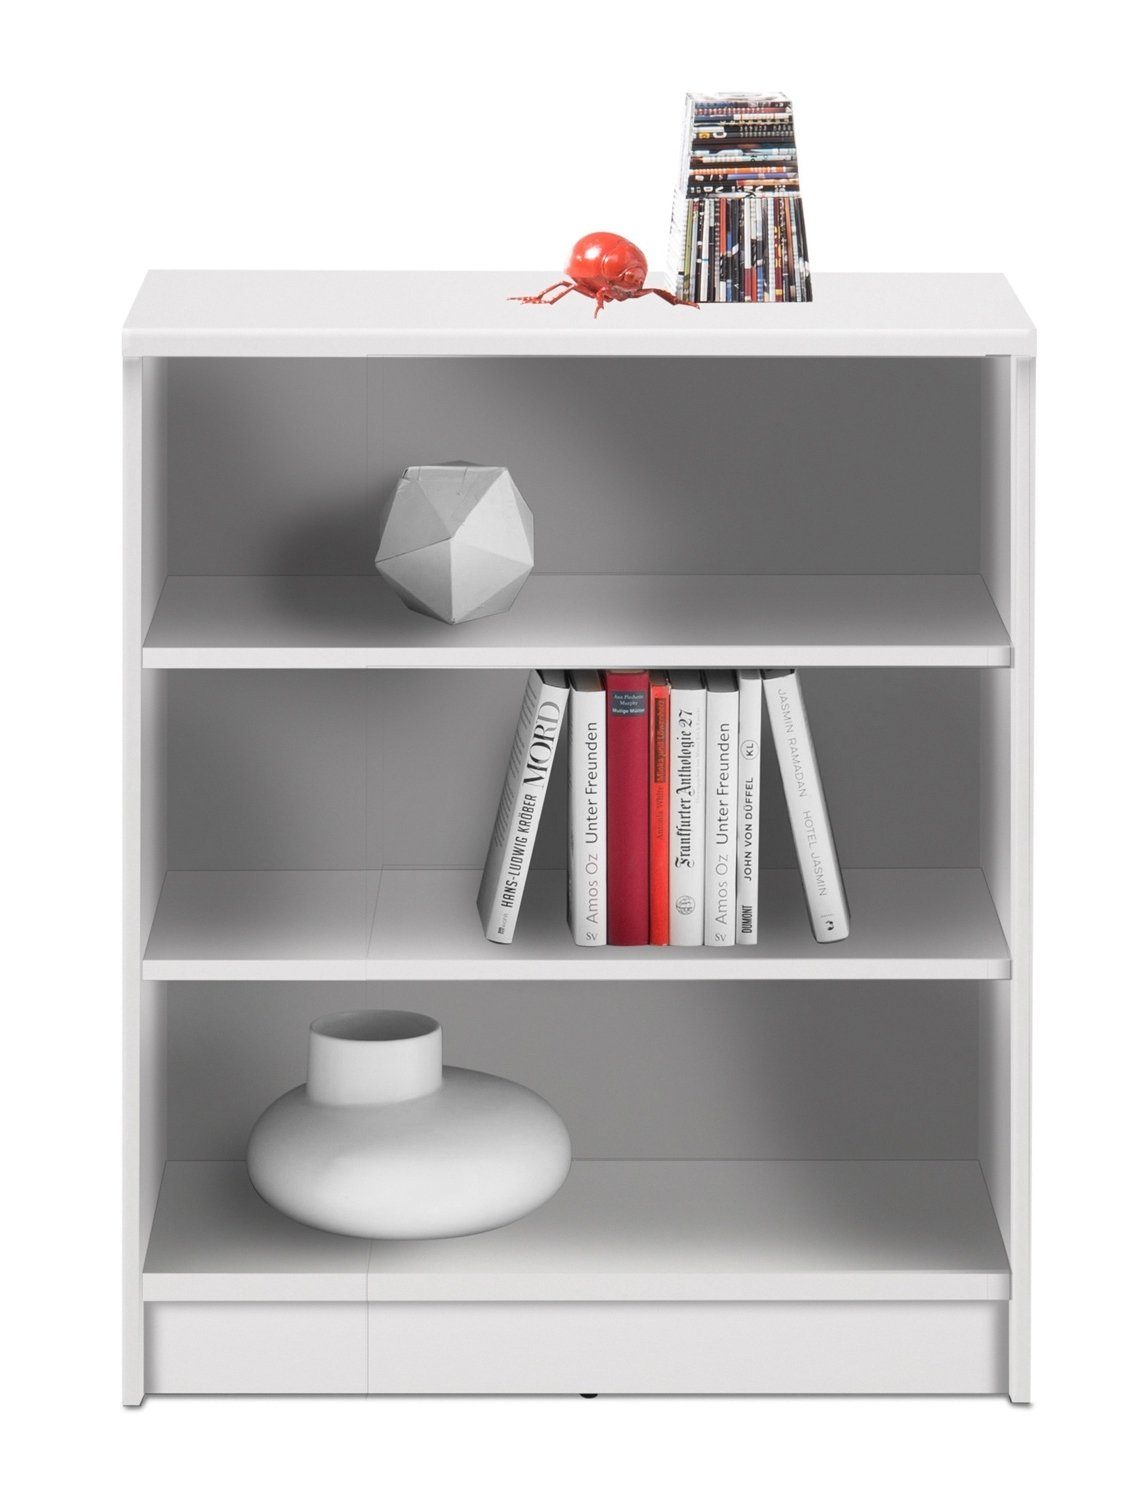 Bücherregal OPTIMUS, Weiß, 3 Fächer, BxHxT 72 x 86 x 34 cm